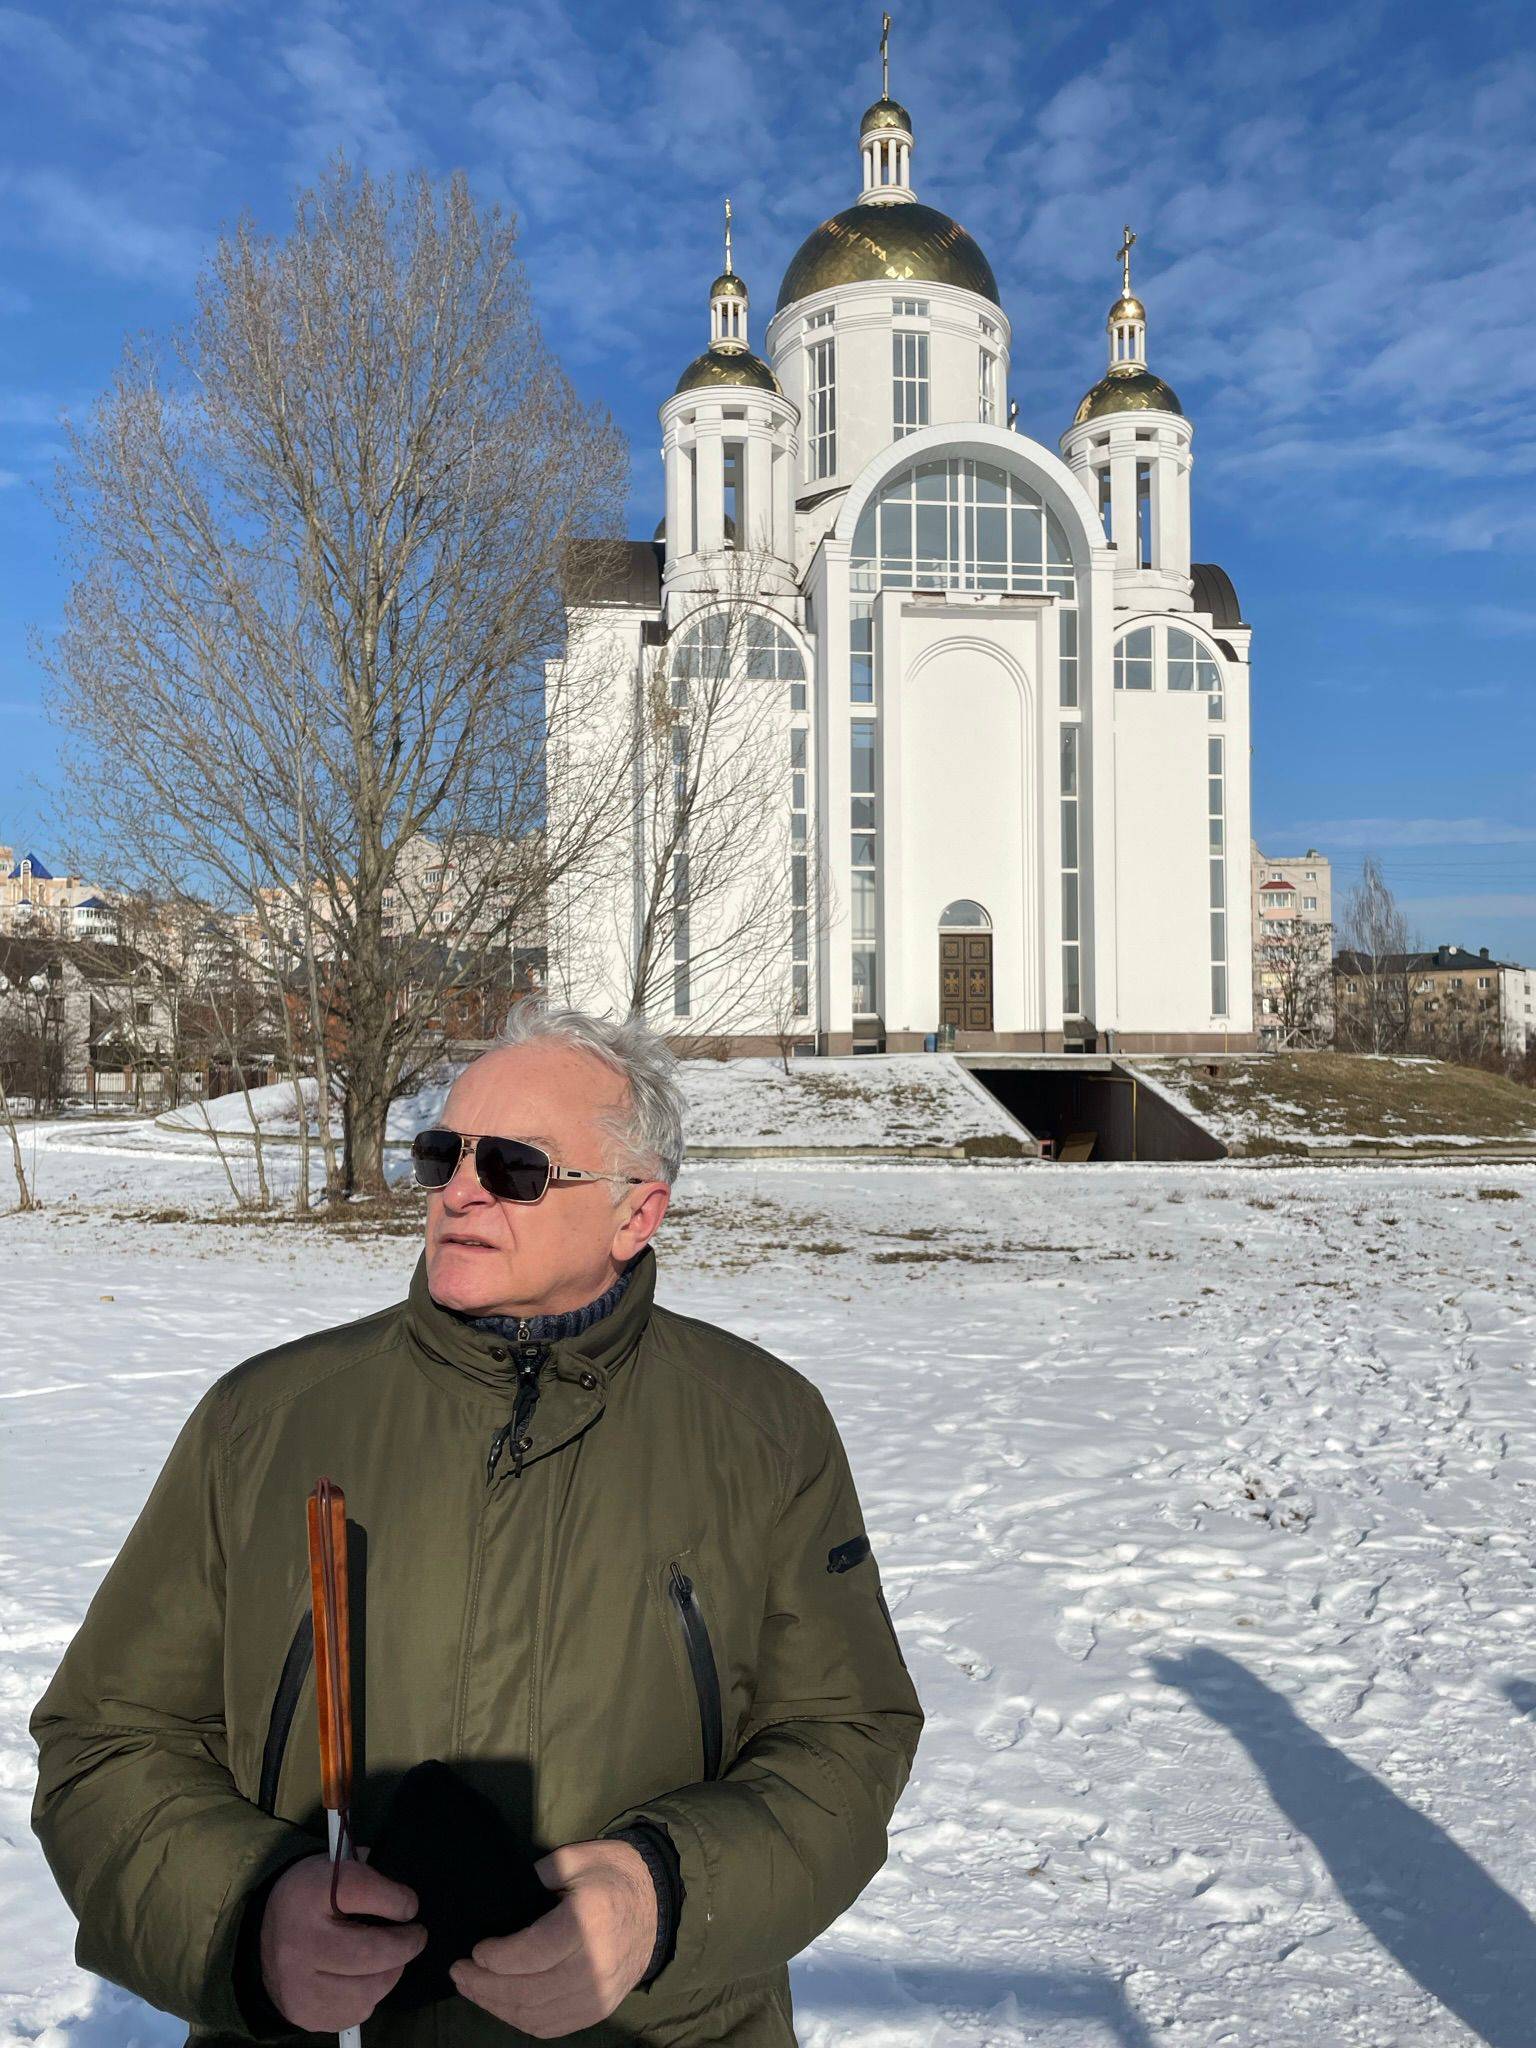 człowiek w ciemnych okularach trzymający białą laskę, w tle biała cerkiew